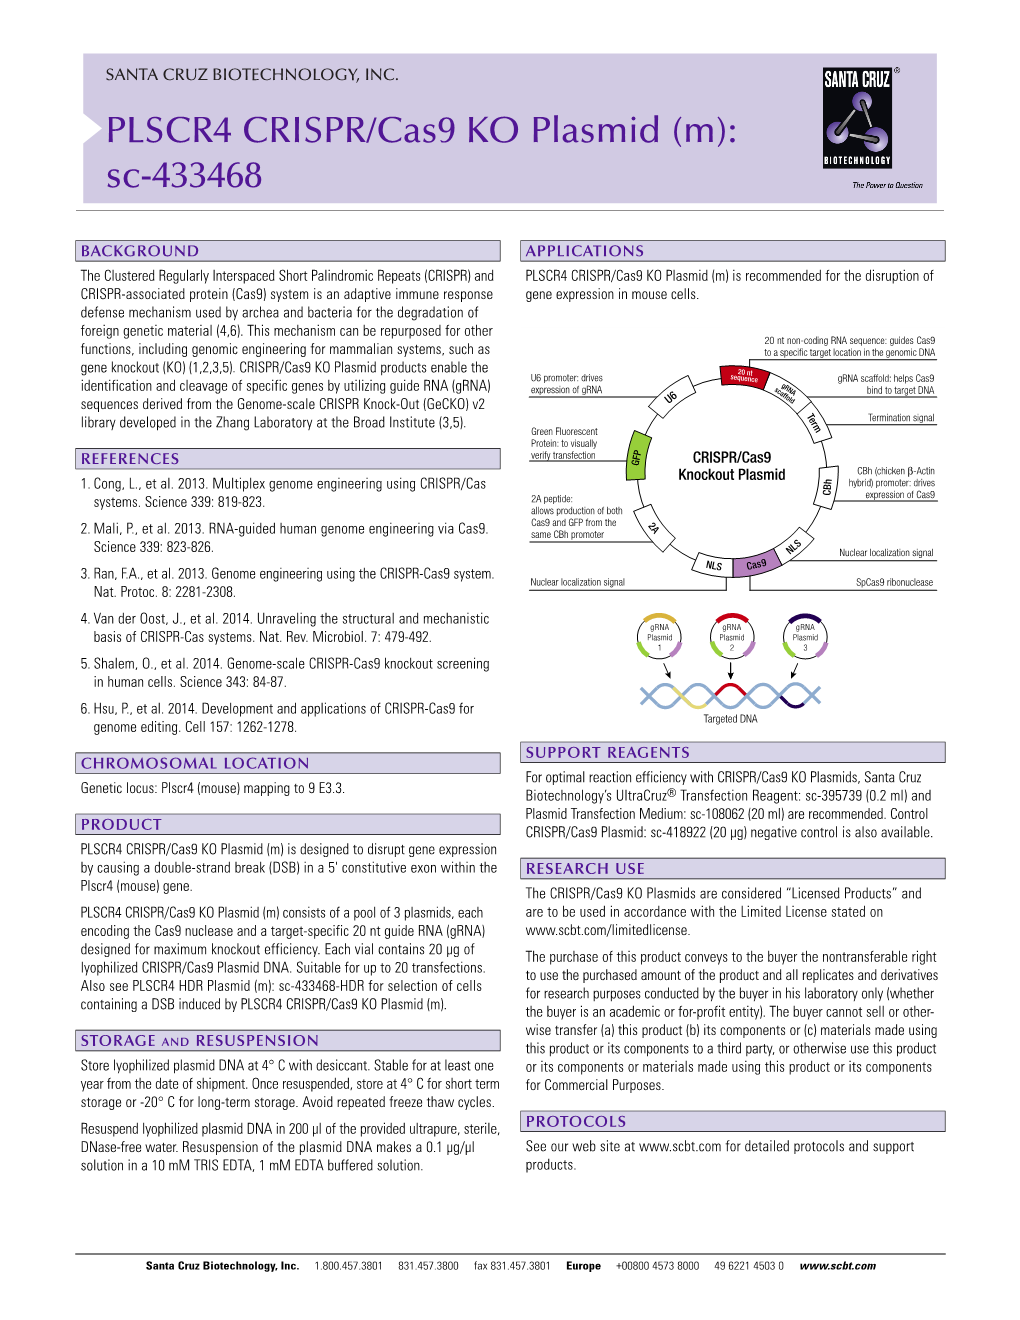 PLSCR4 CRISPR/Cas9 KO Plasmid (M): Sc-433468